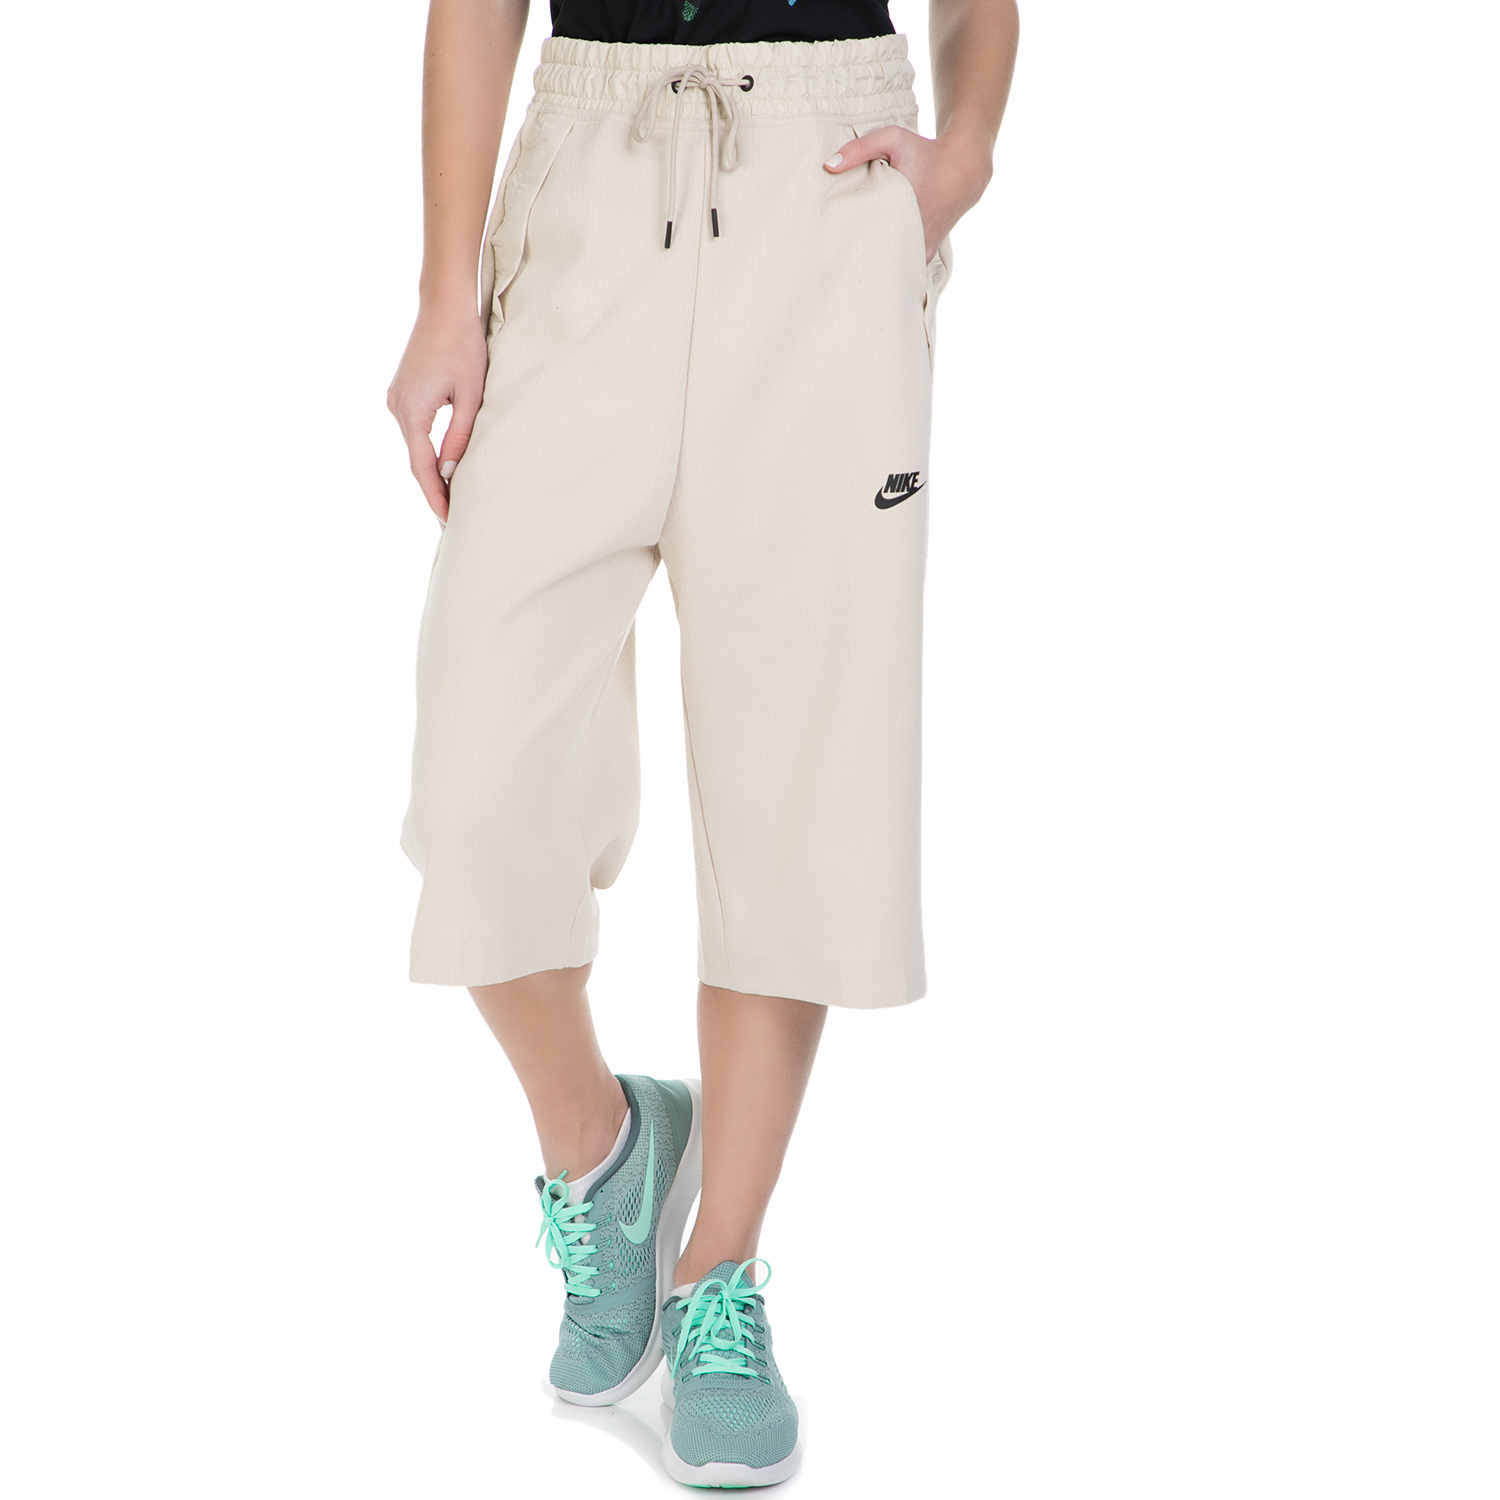 Γυναικεία/Ρούχα/Παντελόνια/Φόρμες NIKE - Γυναικεία φόρμα Nike TCH FLC SHORT 3/4 μπεζ